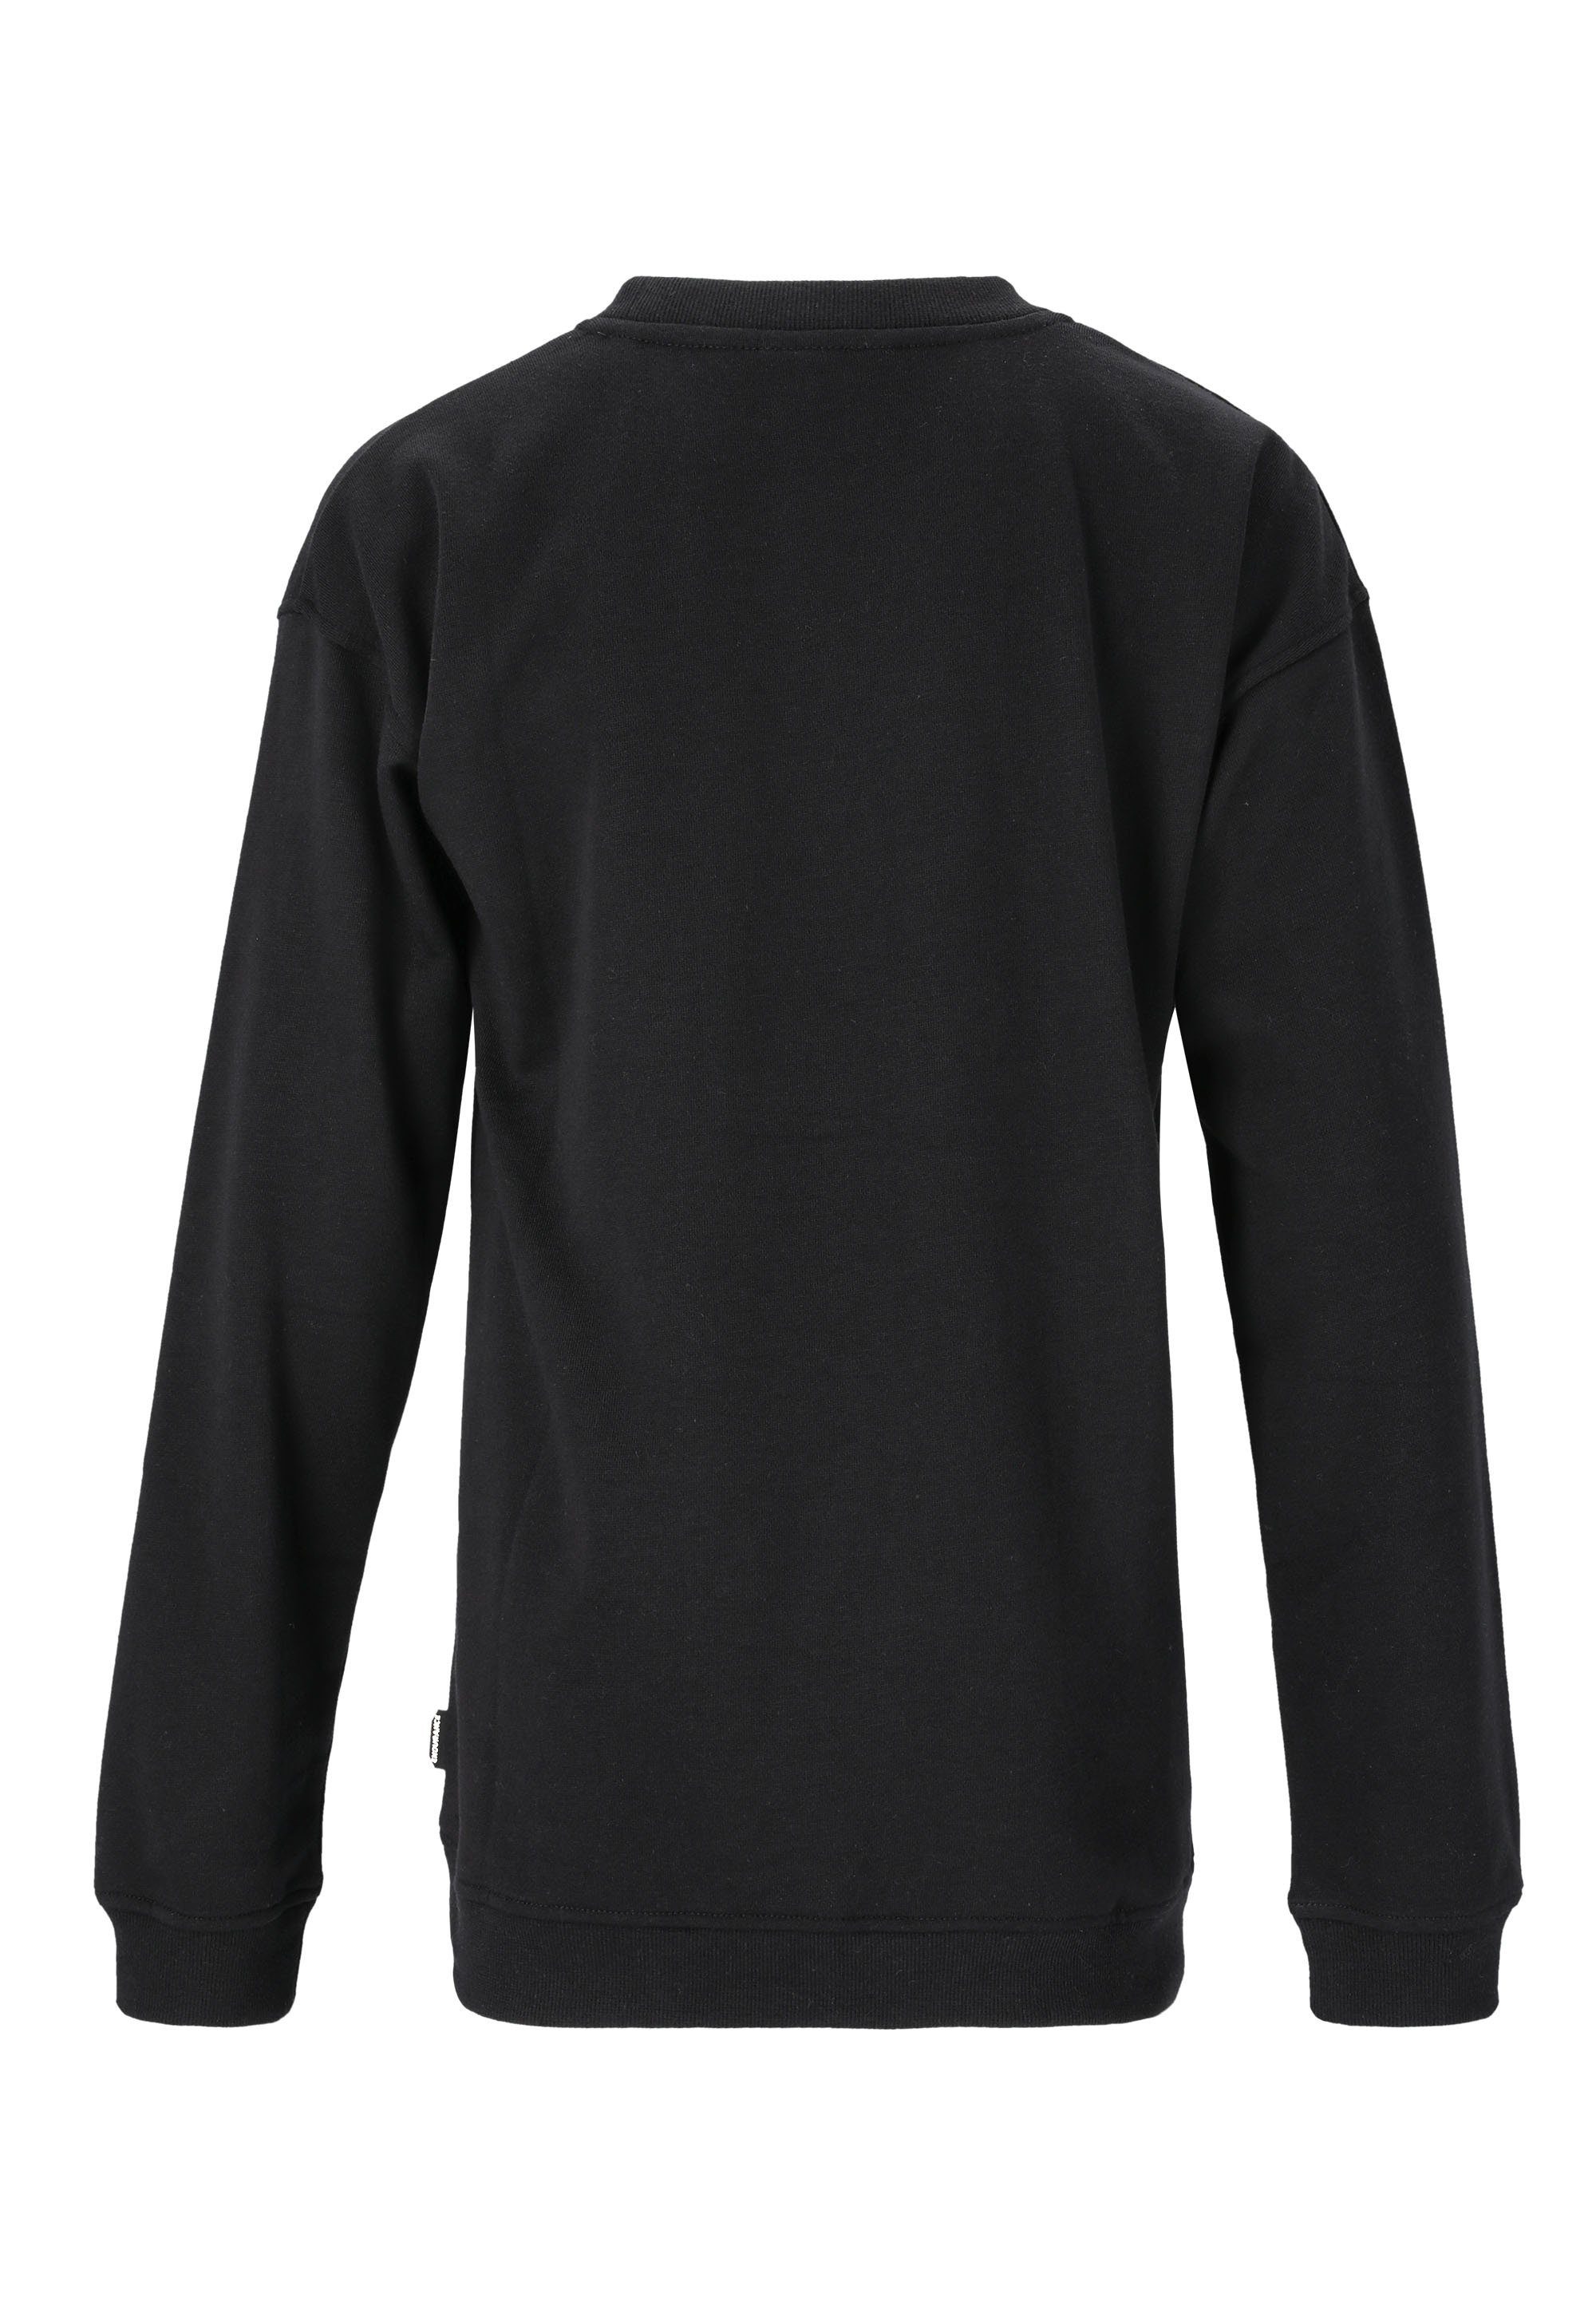 ENDURANCE Sweatshirt Baumwoll-Touch schwarz mit Bastini